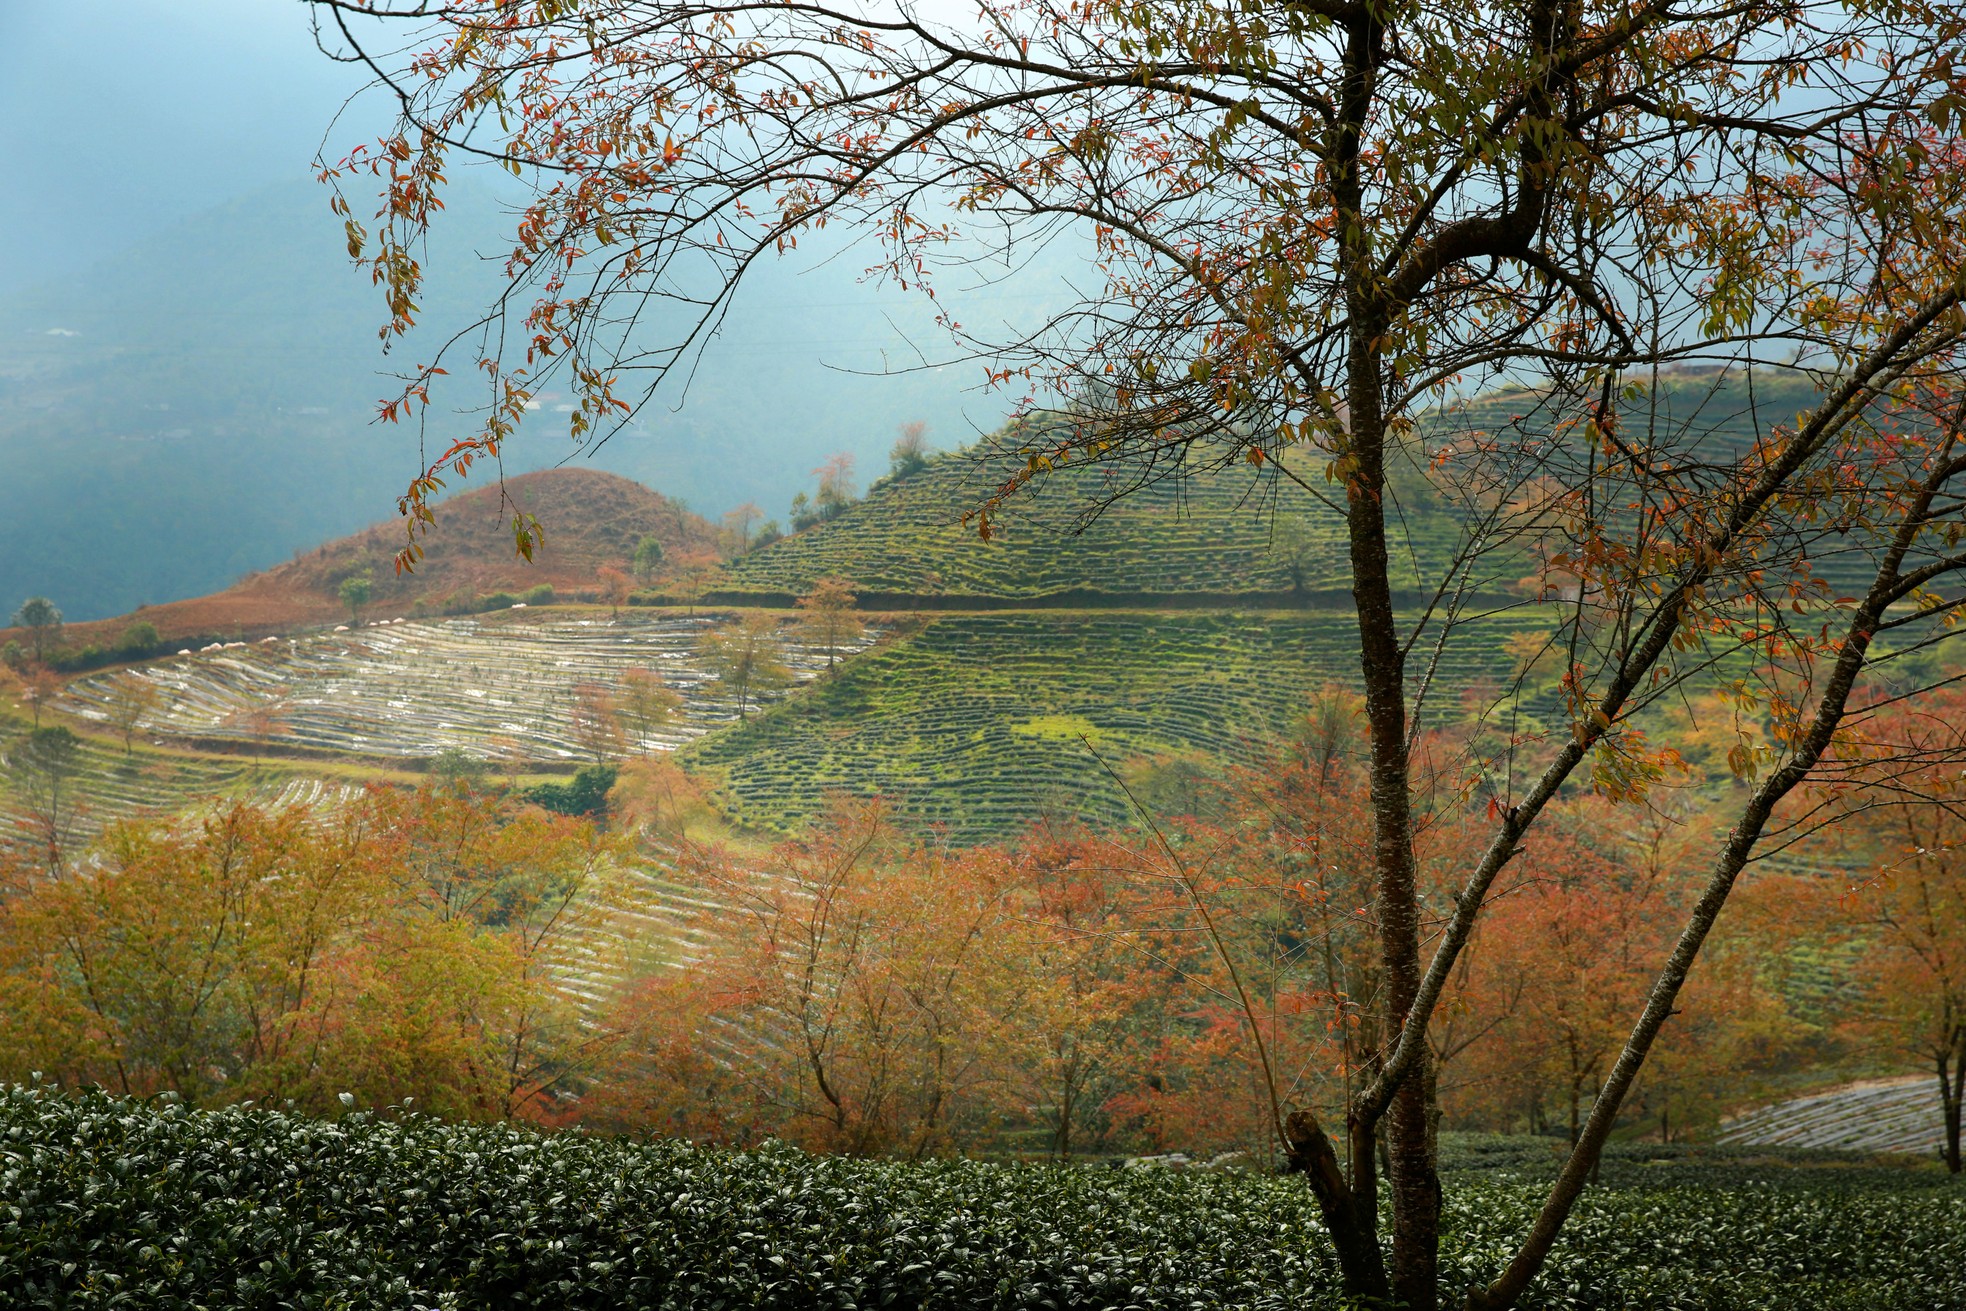 En las hermosas colinas de té de Oolong desde el paso de O Quy Ho, el verdor se intercala con el rosado de las flores de cerezo.